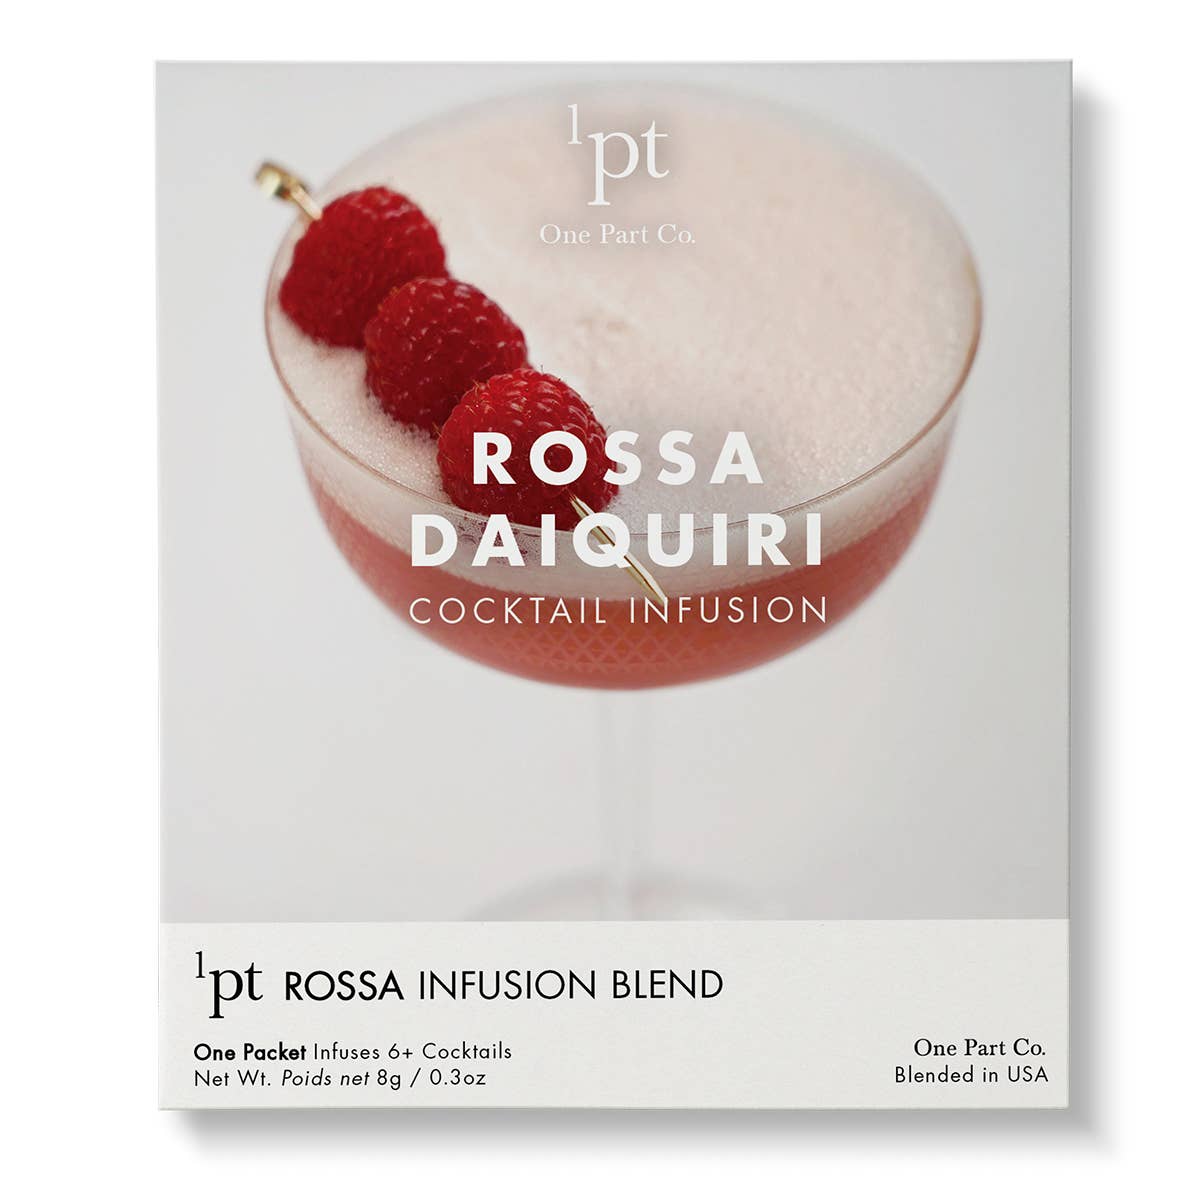 Rossa Daiquiri Cocktail Pack